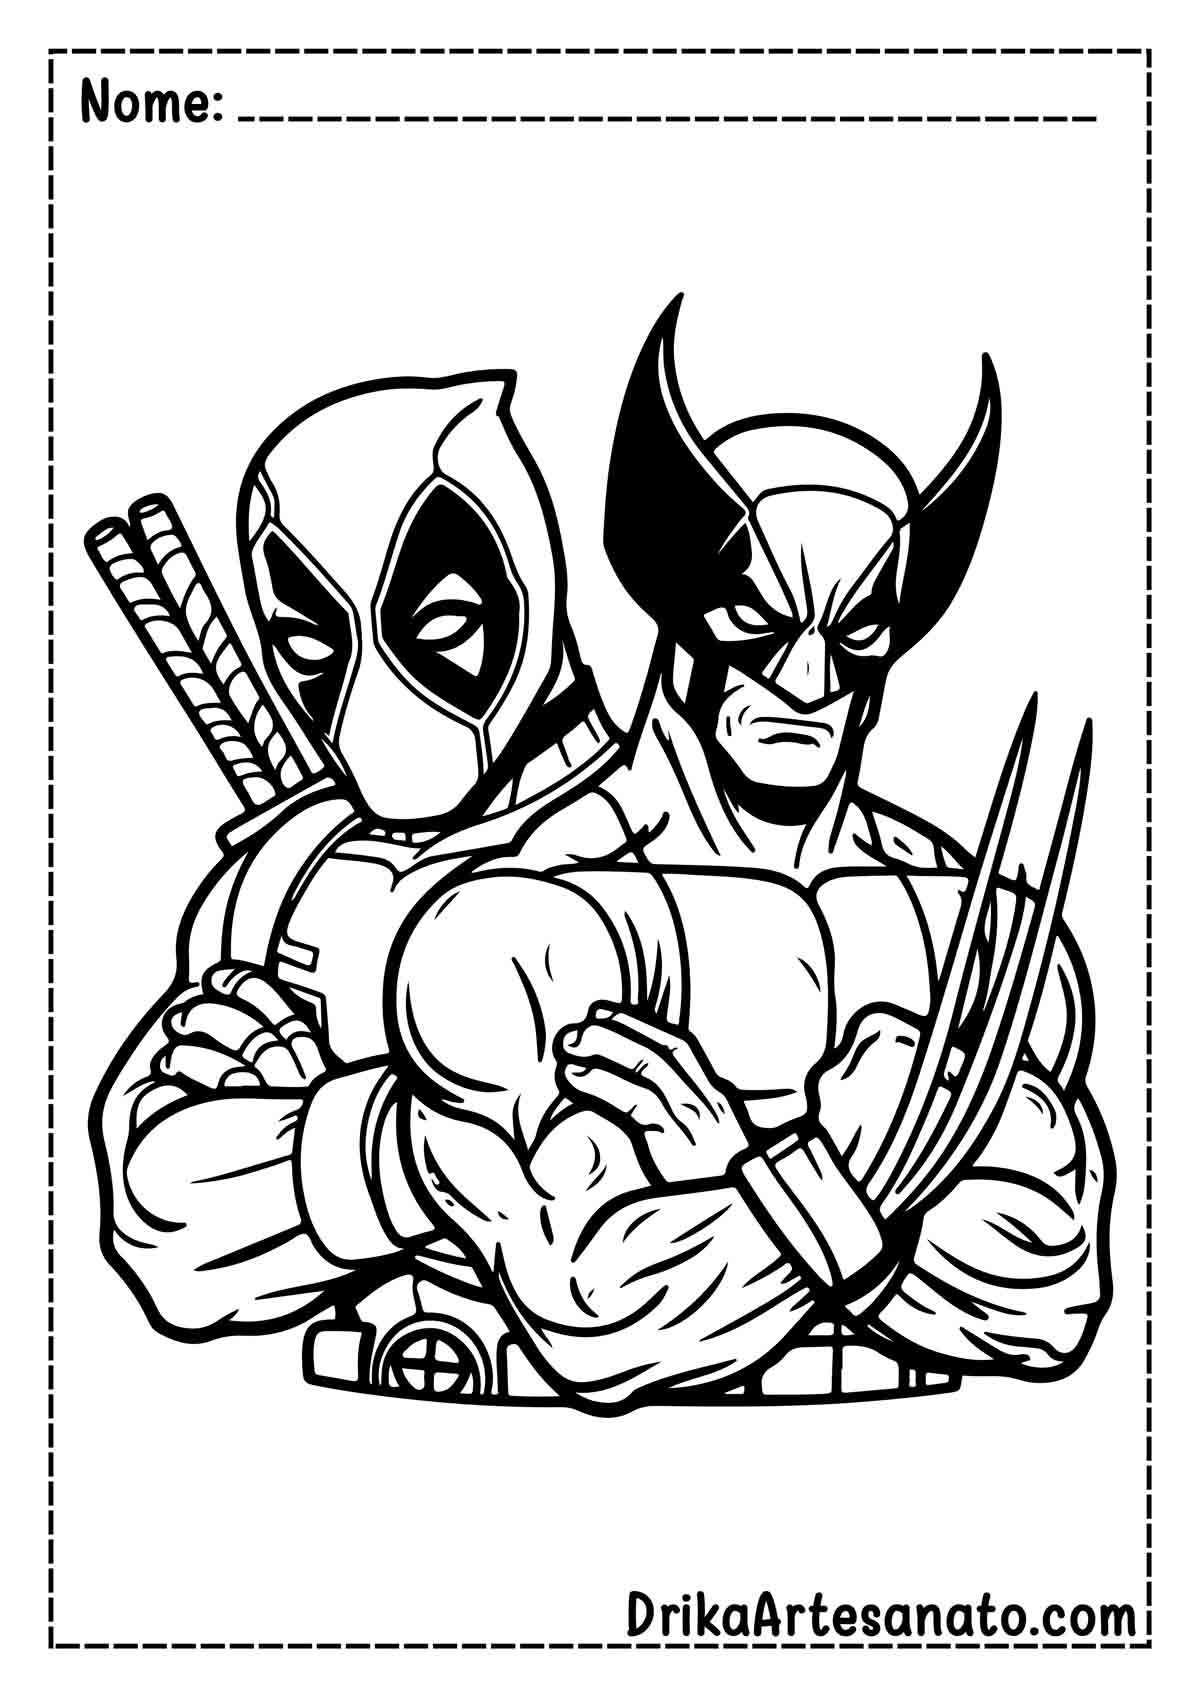 Desenho do Deadpool e Wolverine para Imprimir